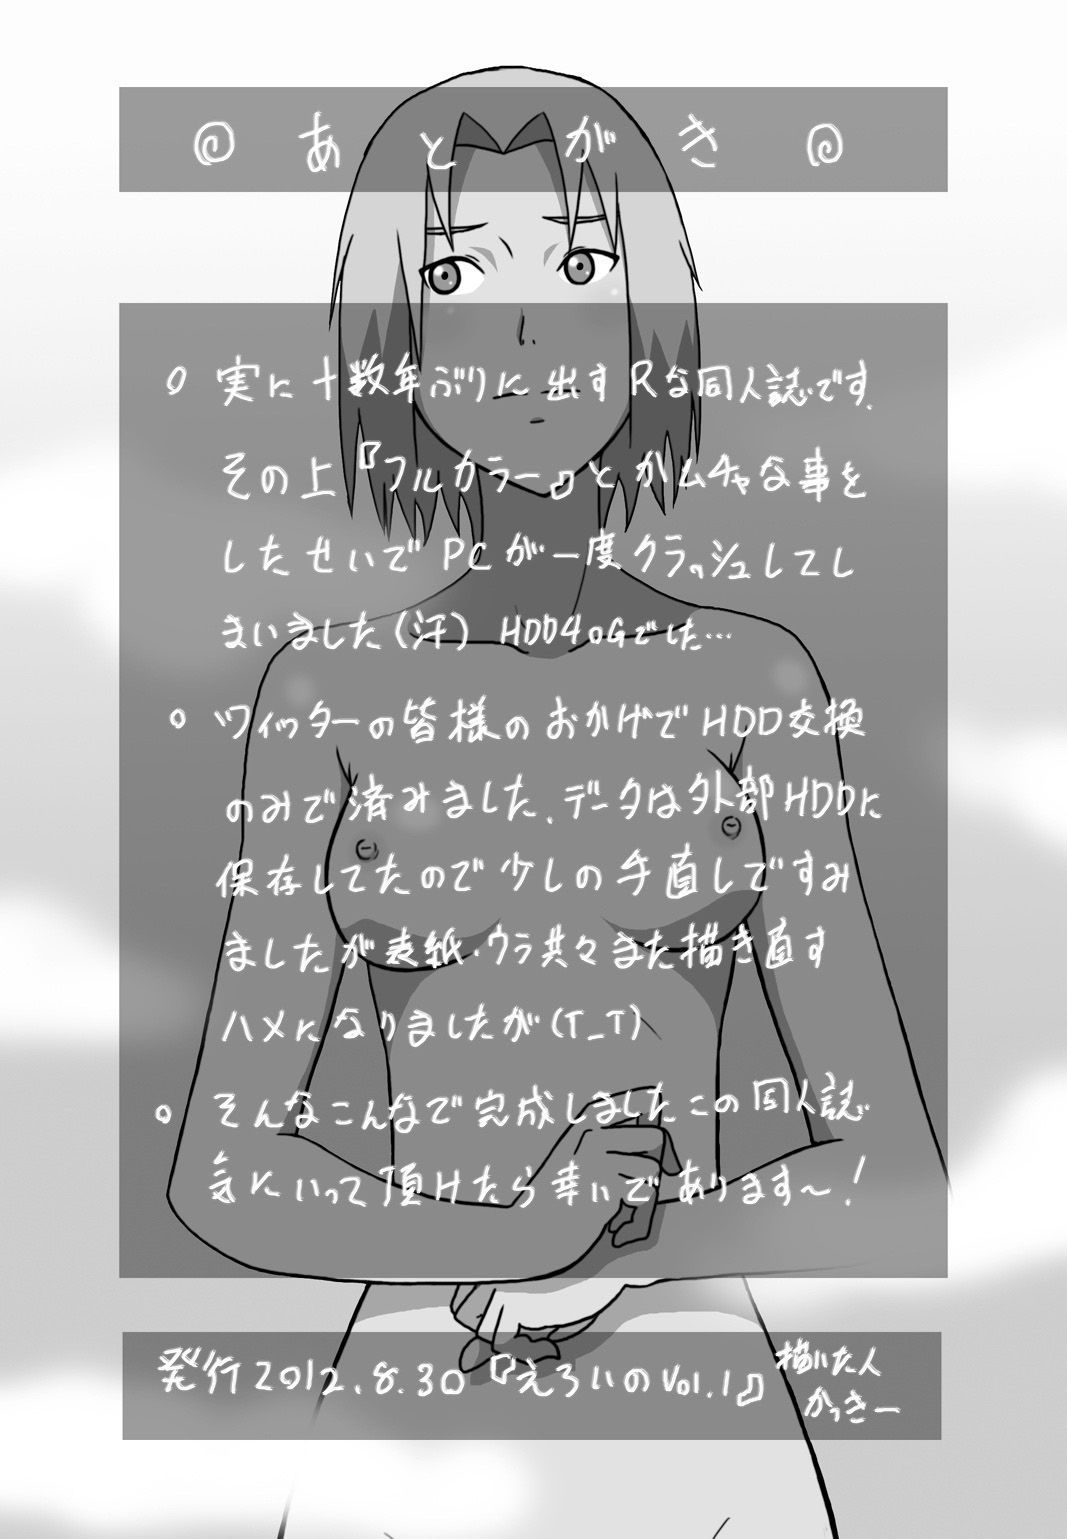 kakkii 堂 eroi no vol.1 (naruto) biribiri 部分 2